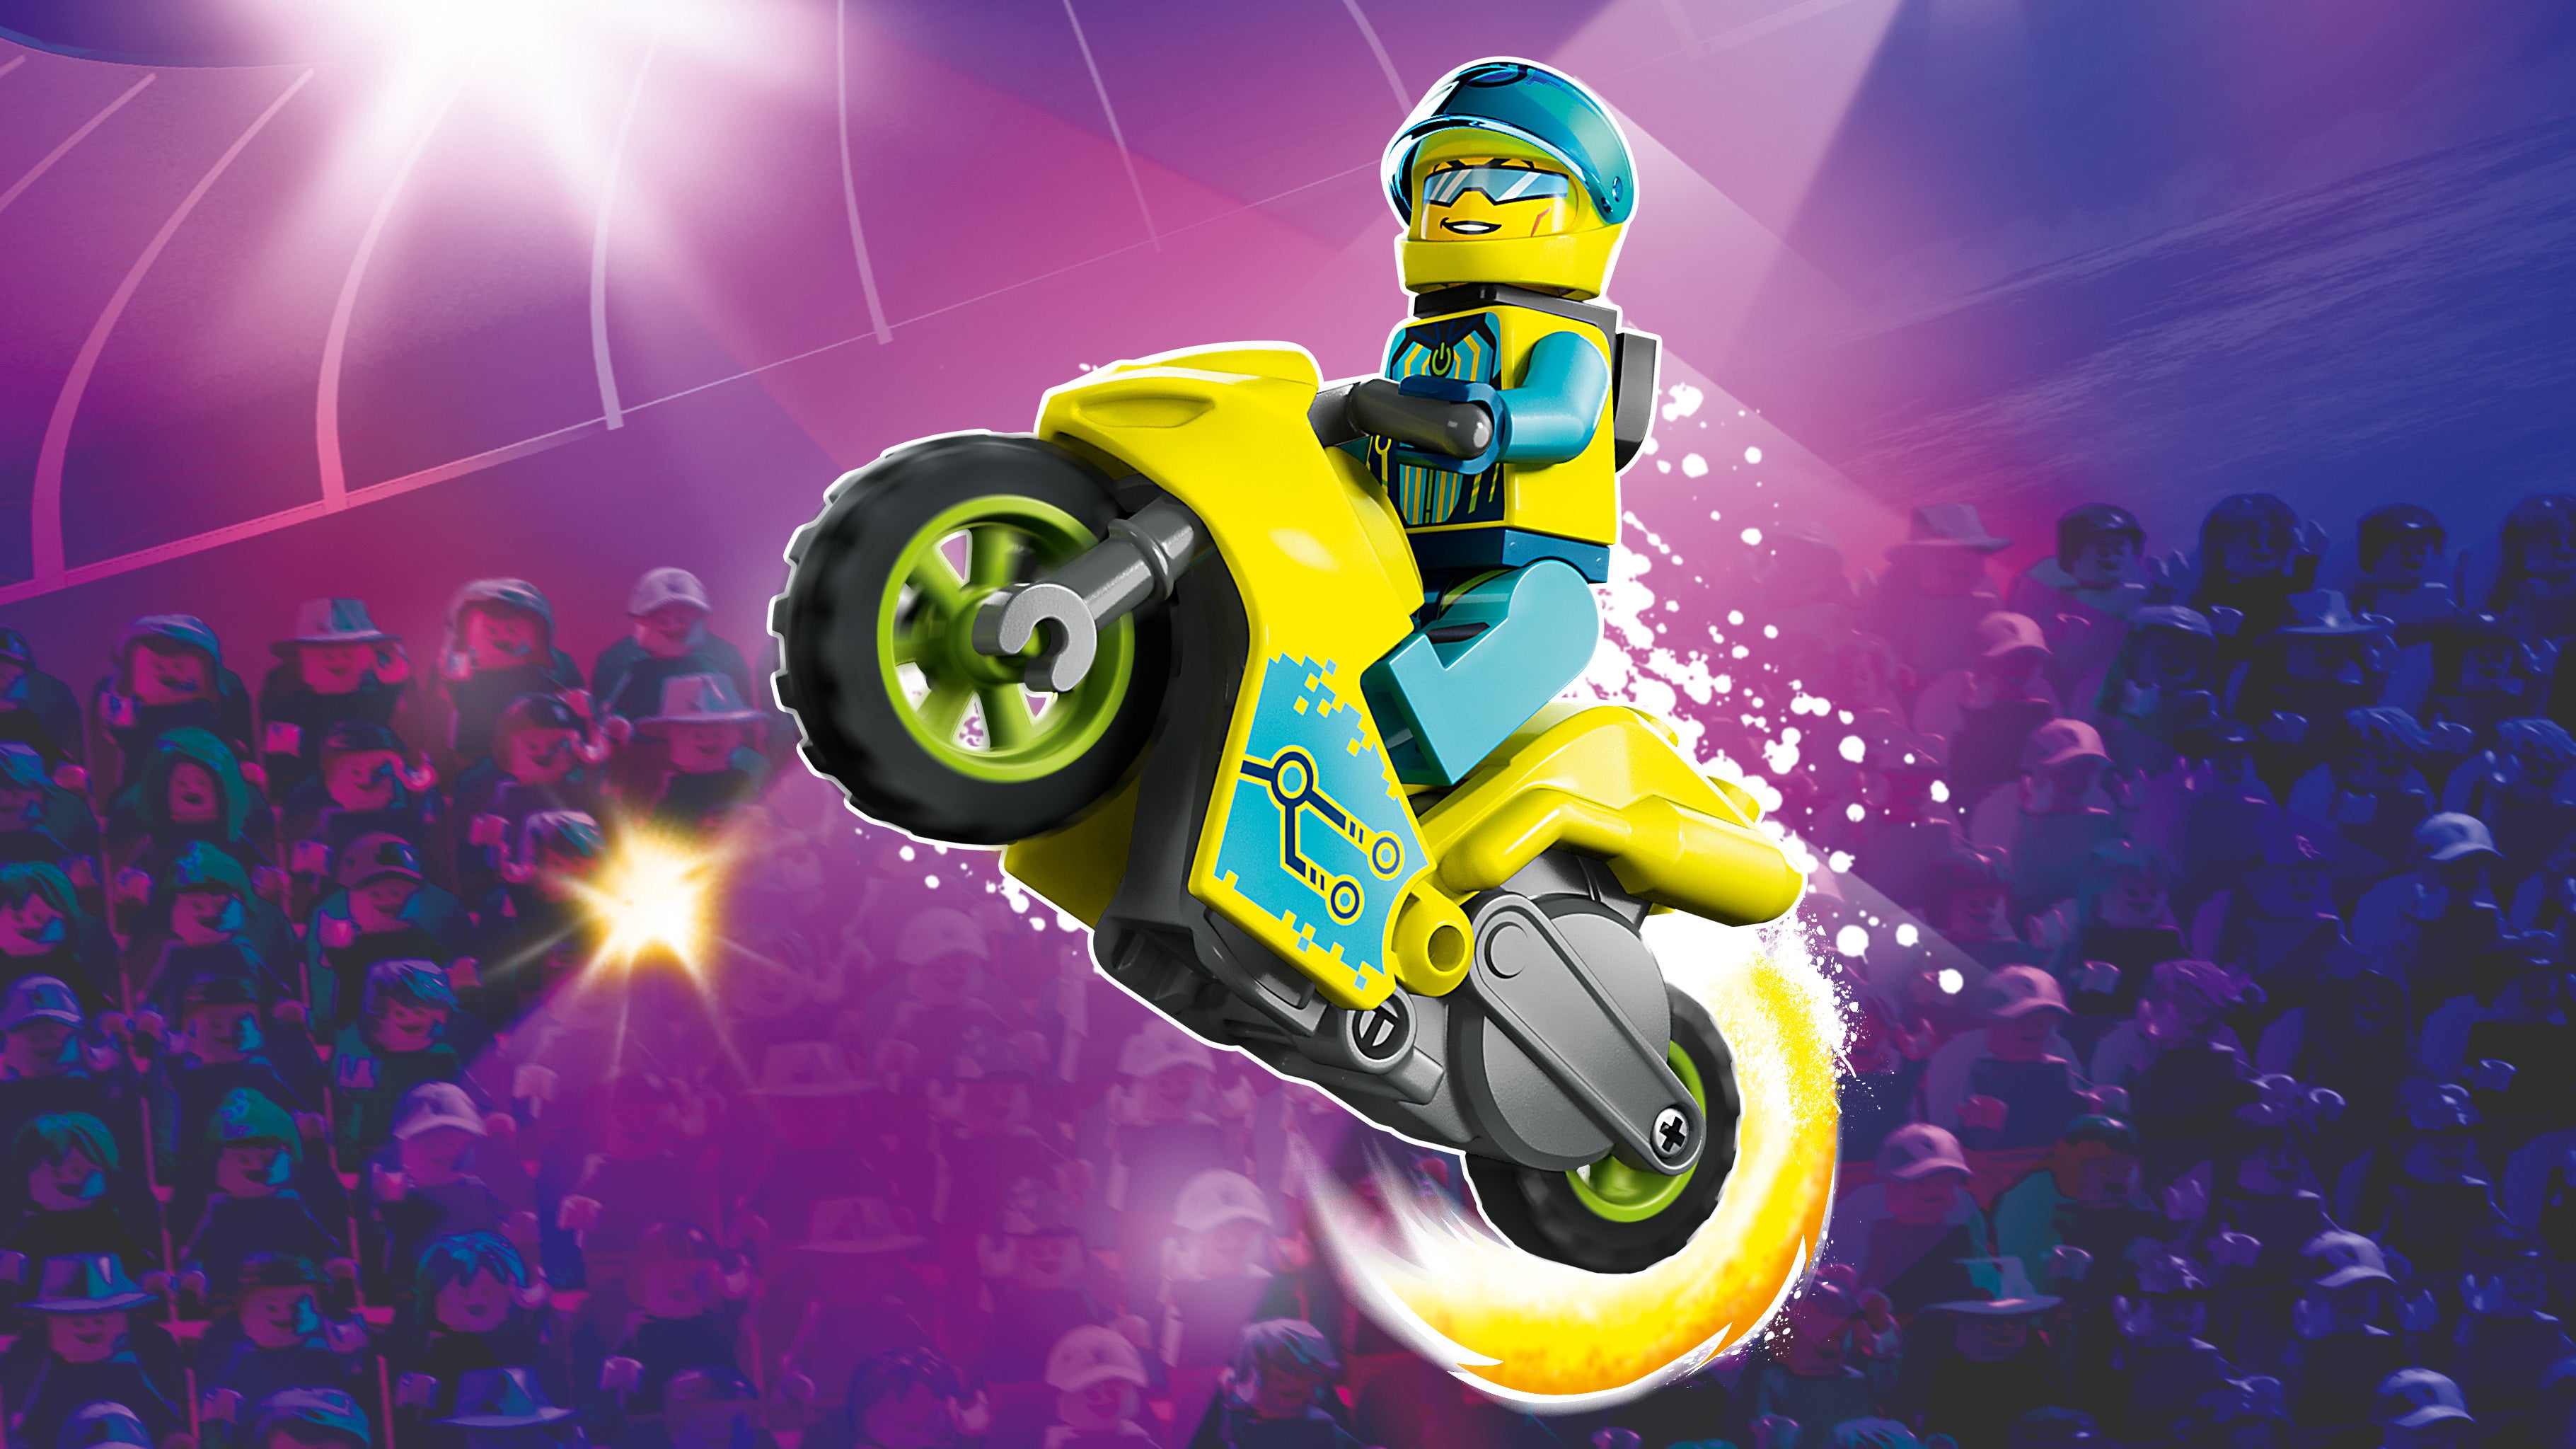 Lego 60358 Cyber Stunt Bike